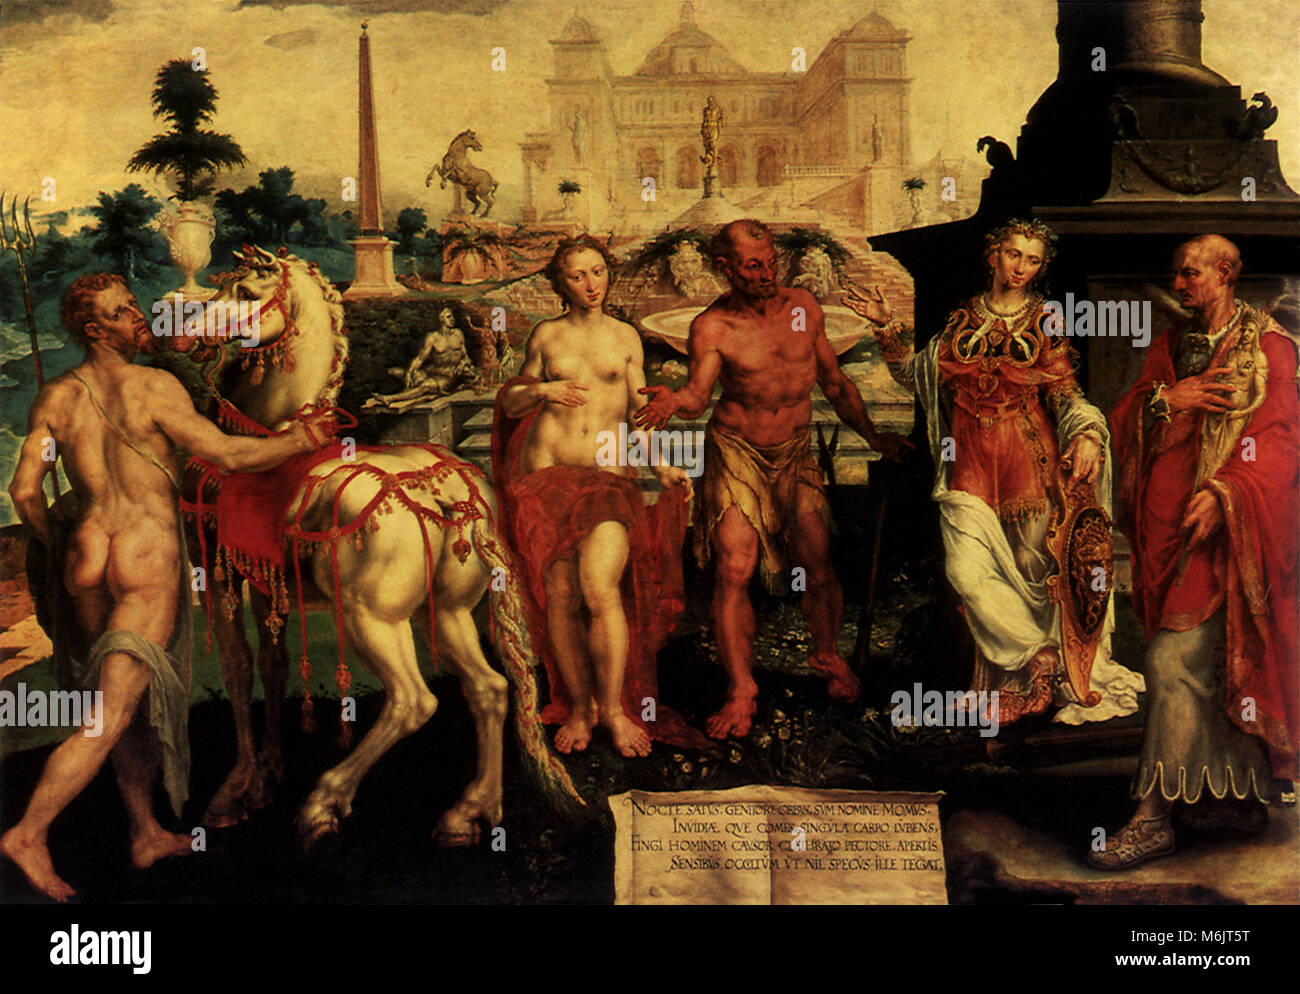 Momus Criticizes the Gods' Creations, Heck, Marten Heemskerck van de, 1561. Stock Photo